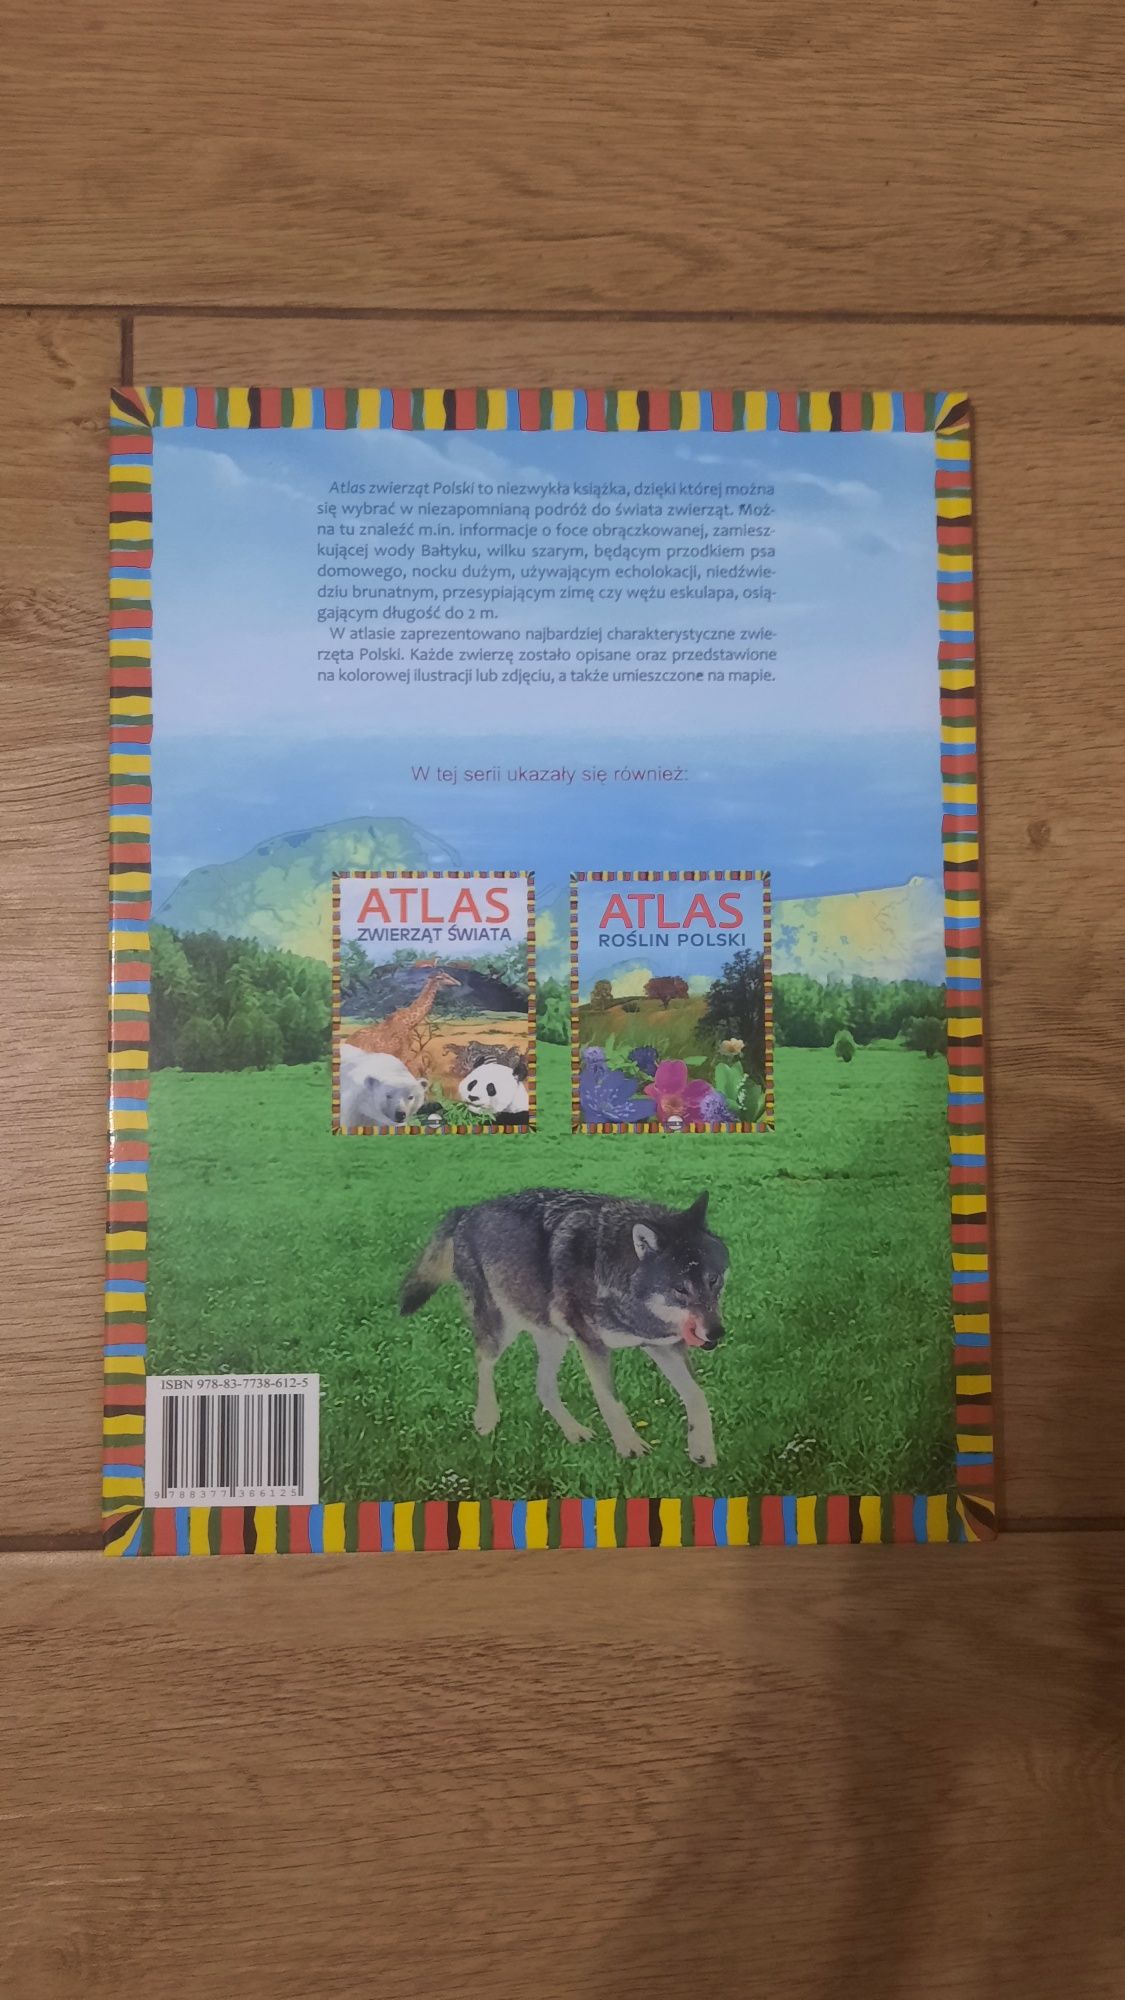 Atlas zwierząt Polski. Książka dla dzieci.